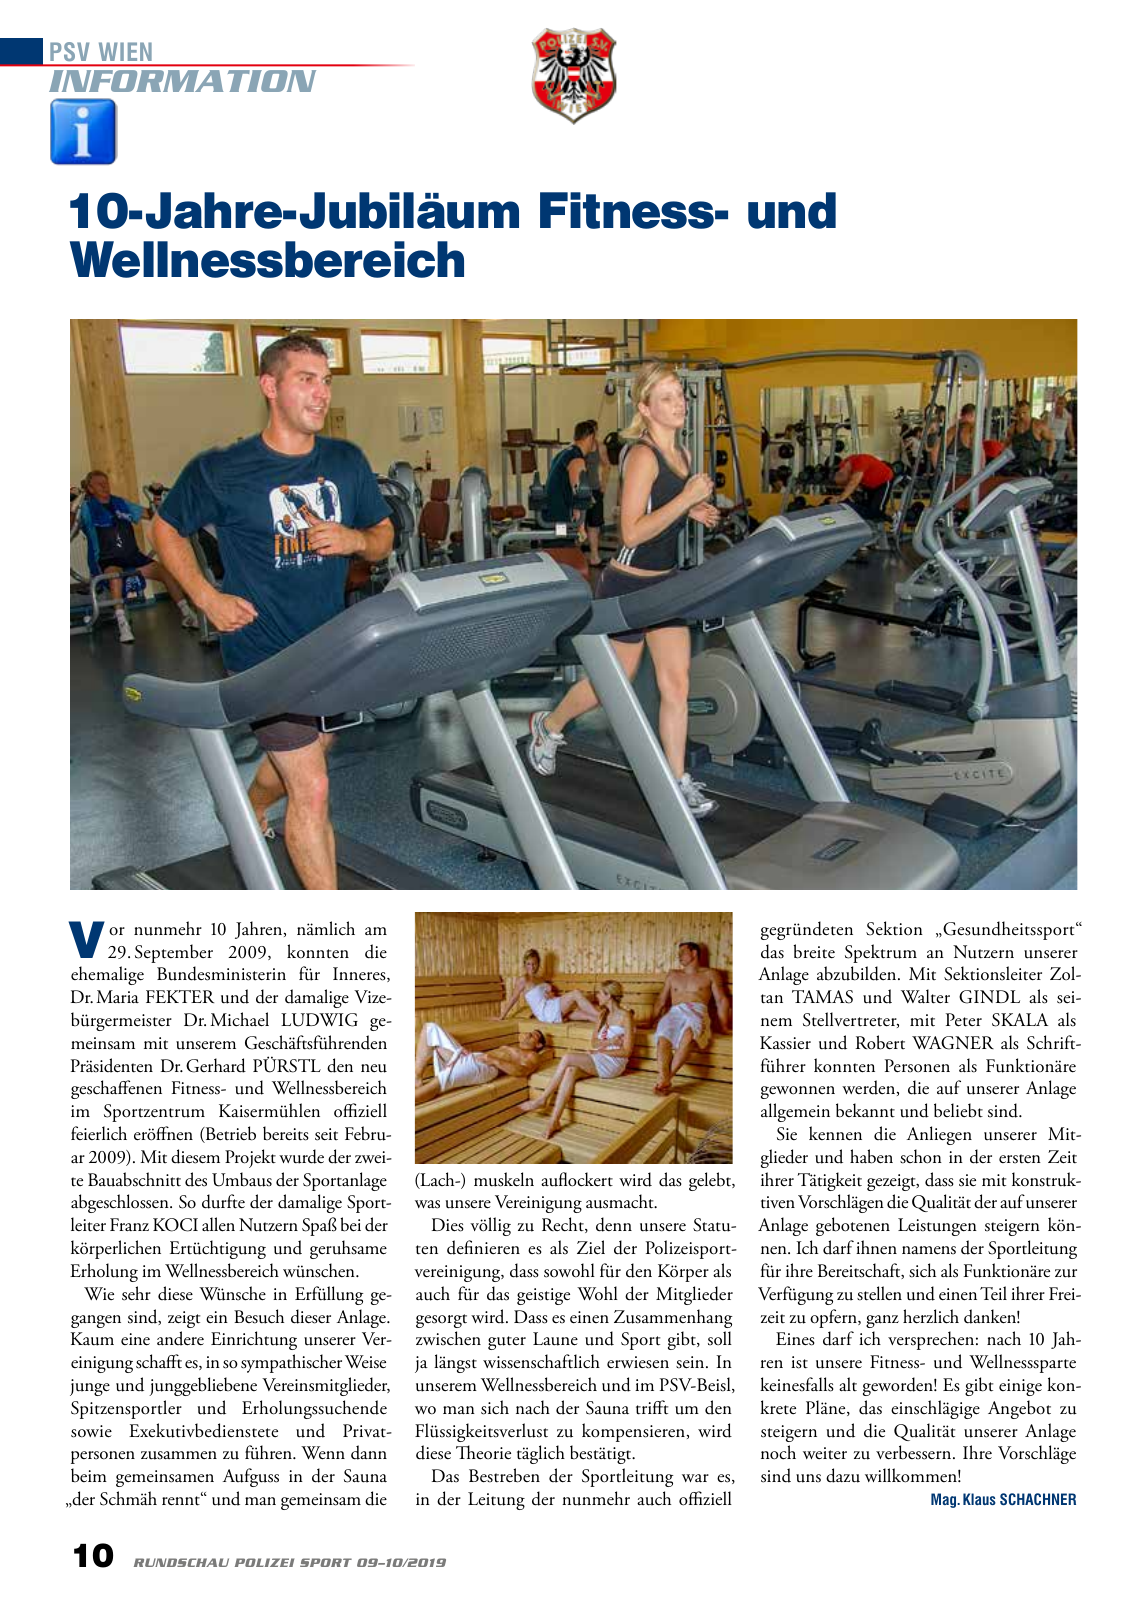 Vorschau Rundschau Polizei Sport 09-10/2019 Seite 10